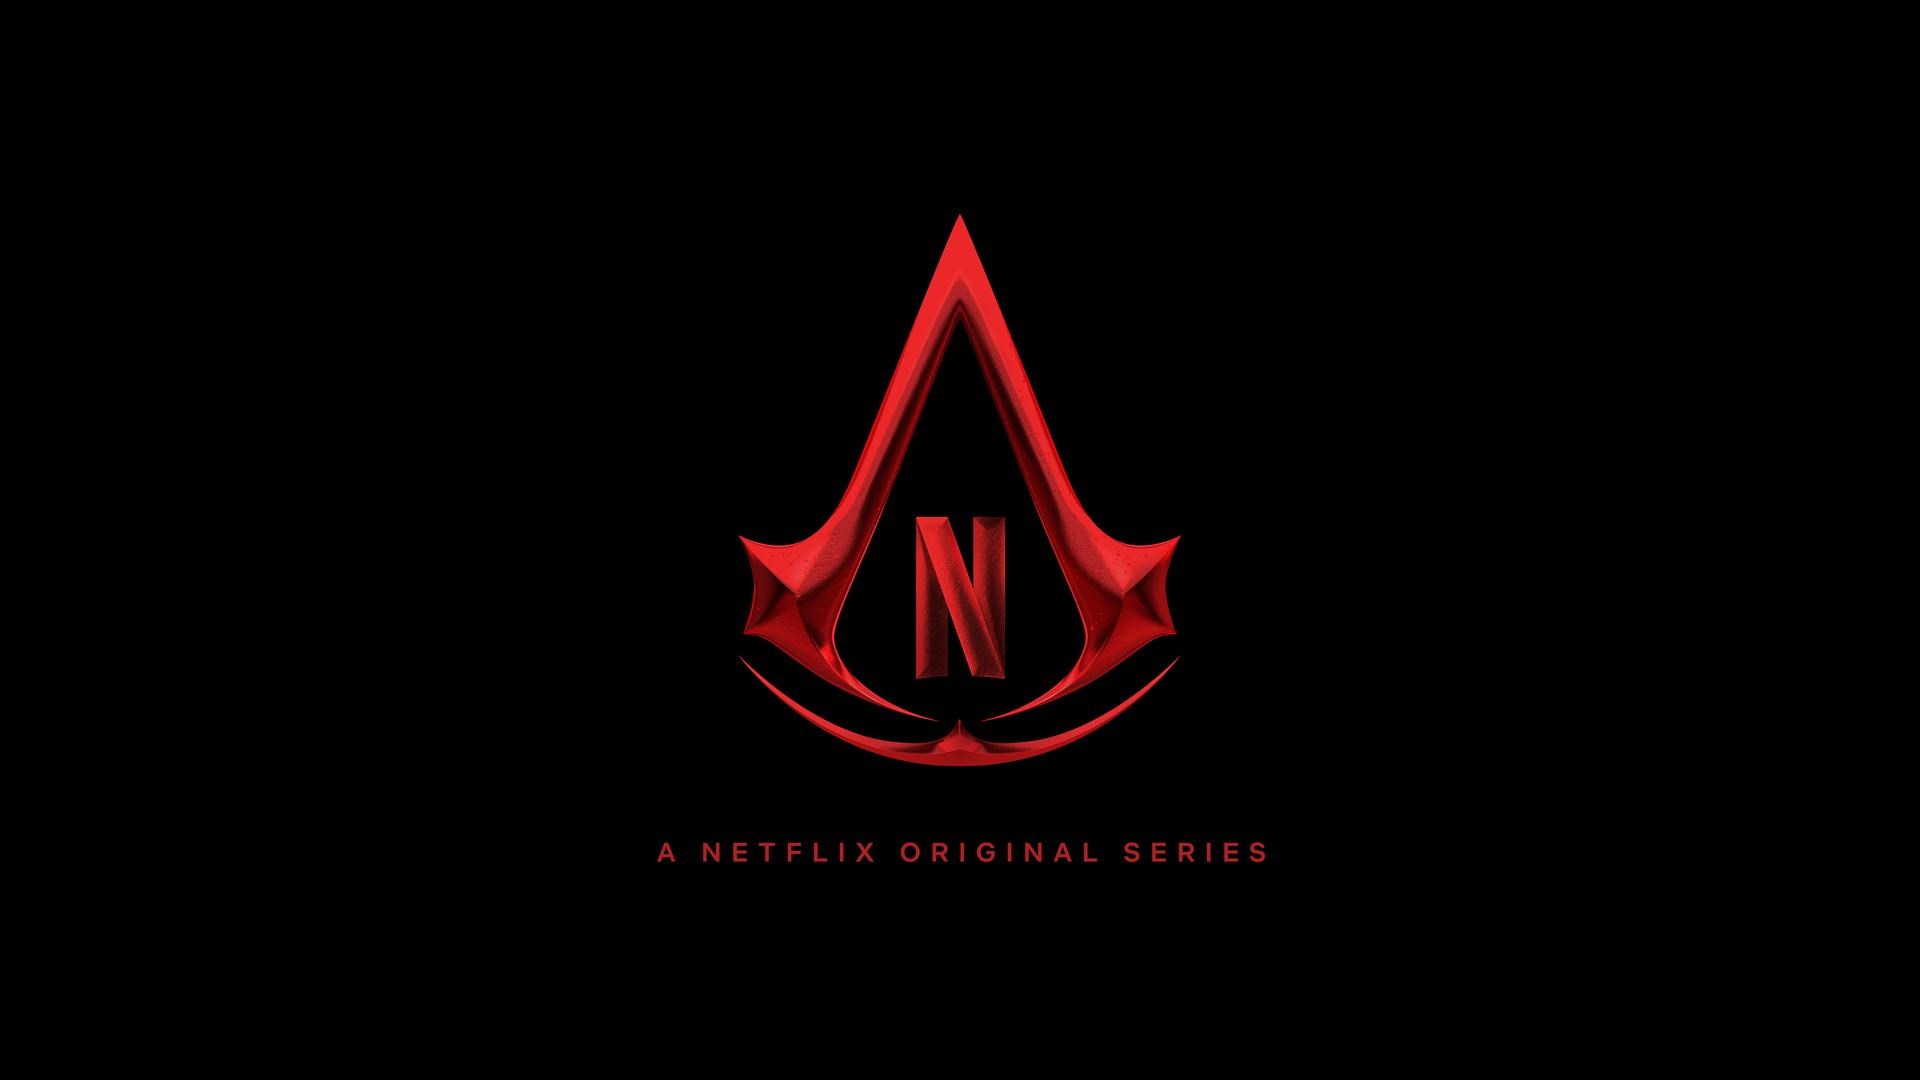 Netflix duyurdu: Assassin's Creed dizisi geliyor